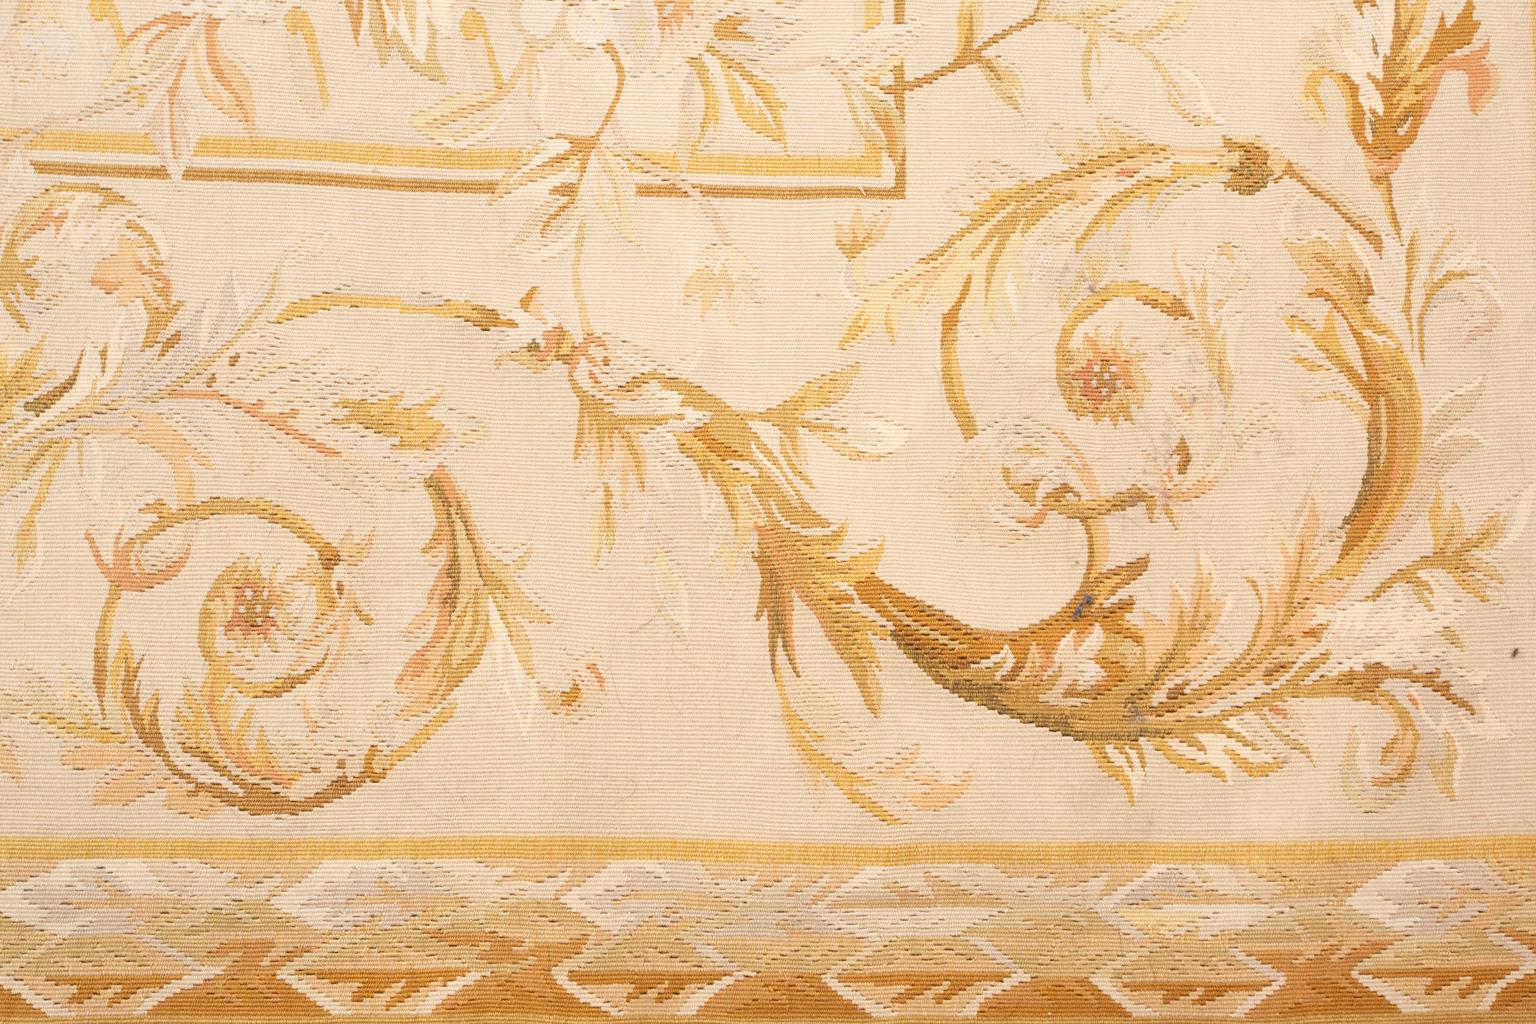 Provenienz: eine Park Avenue Collection'S

Ein schöner französischer Aubusson-Teppich aus dem späten 19. Jahrhundert mit üppigen, belaubten Rosenzweigen auf dem cremefarbenen Feld innerhalb einer sandfarbenen, verschnörkelten Weinbordüre. Die Städte